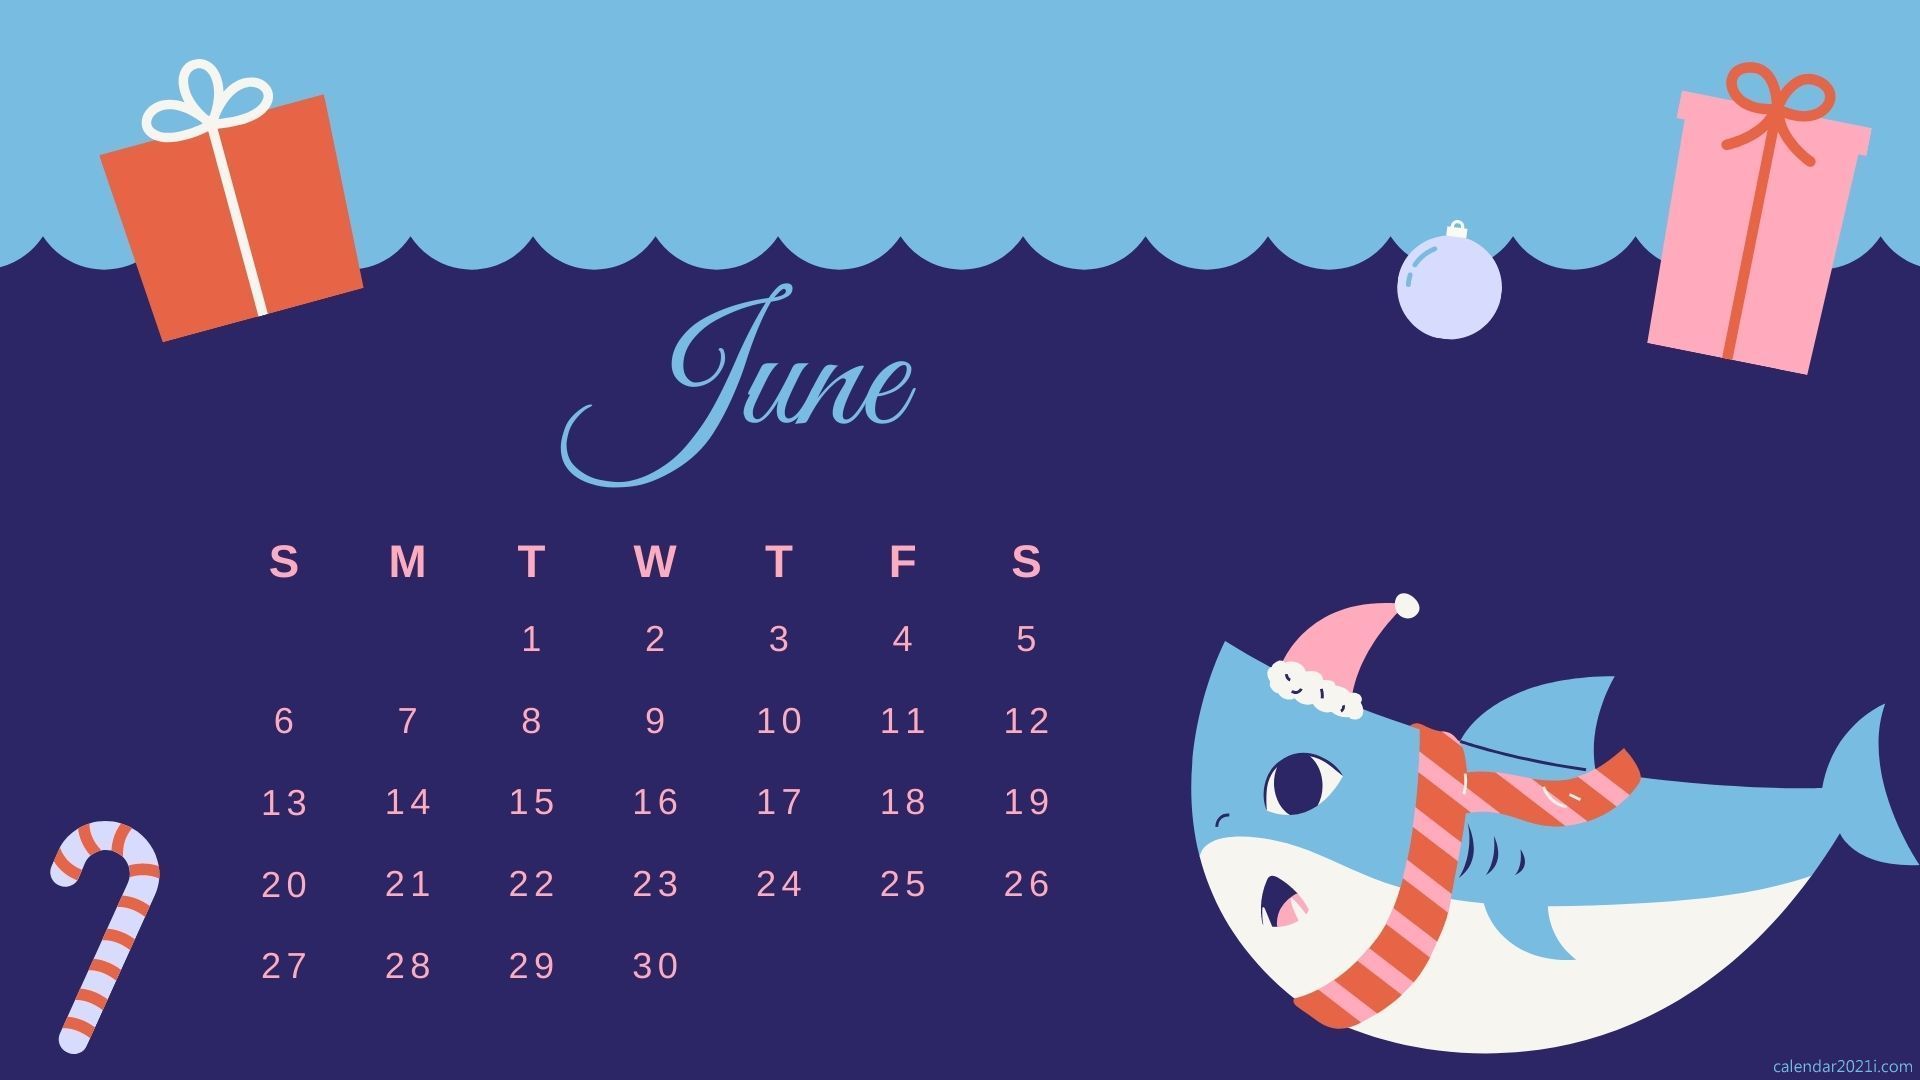 June 2021 Calendar HD Wallpaper Free Download